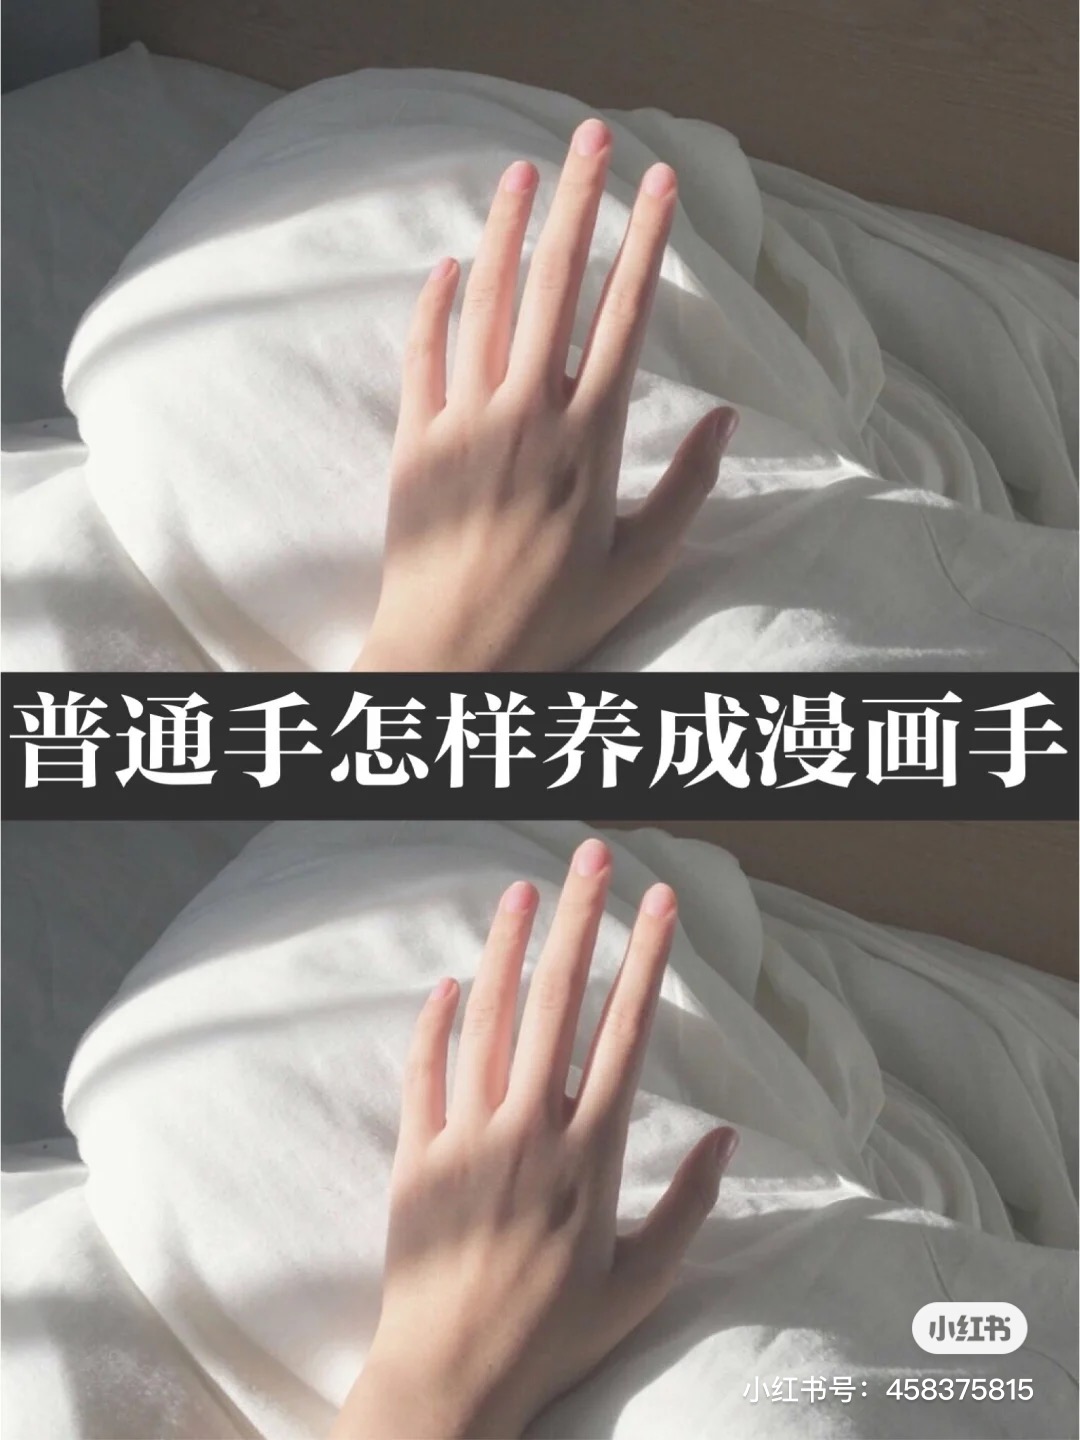 中華红news 漫画手 とは 手の甲の骨がしっかり見える 色白で柔らかい 関節が太くない 指が長い 漫画の中のイラストのように美しい手のことです 中国美女の間で 漫画手 になる為のケアが流行中 ワンホン チャイボーク 中国美女